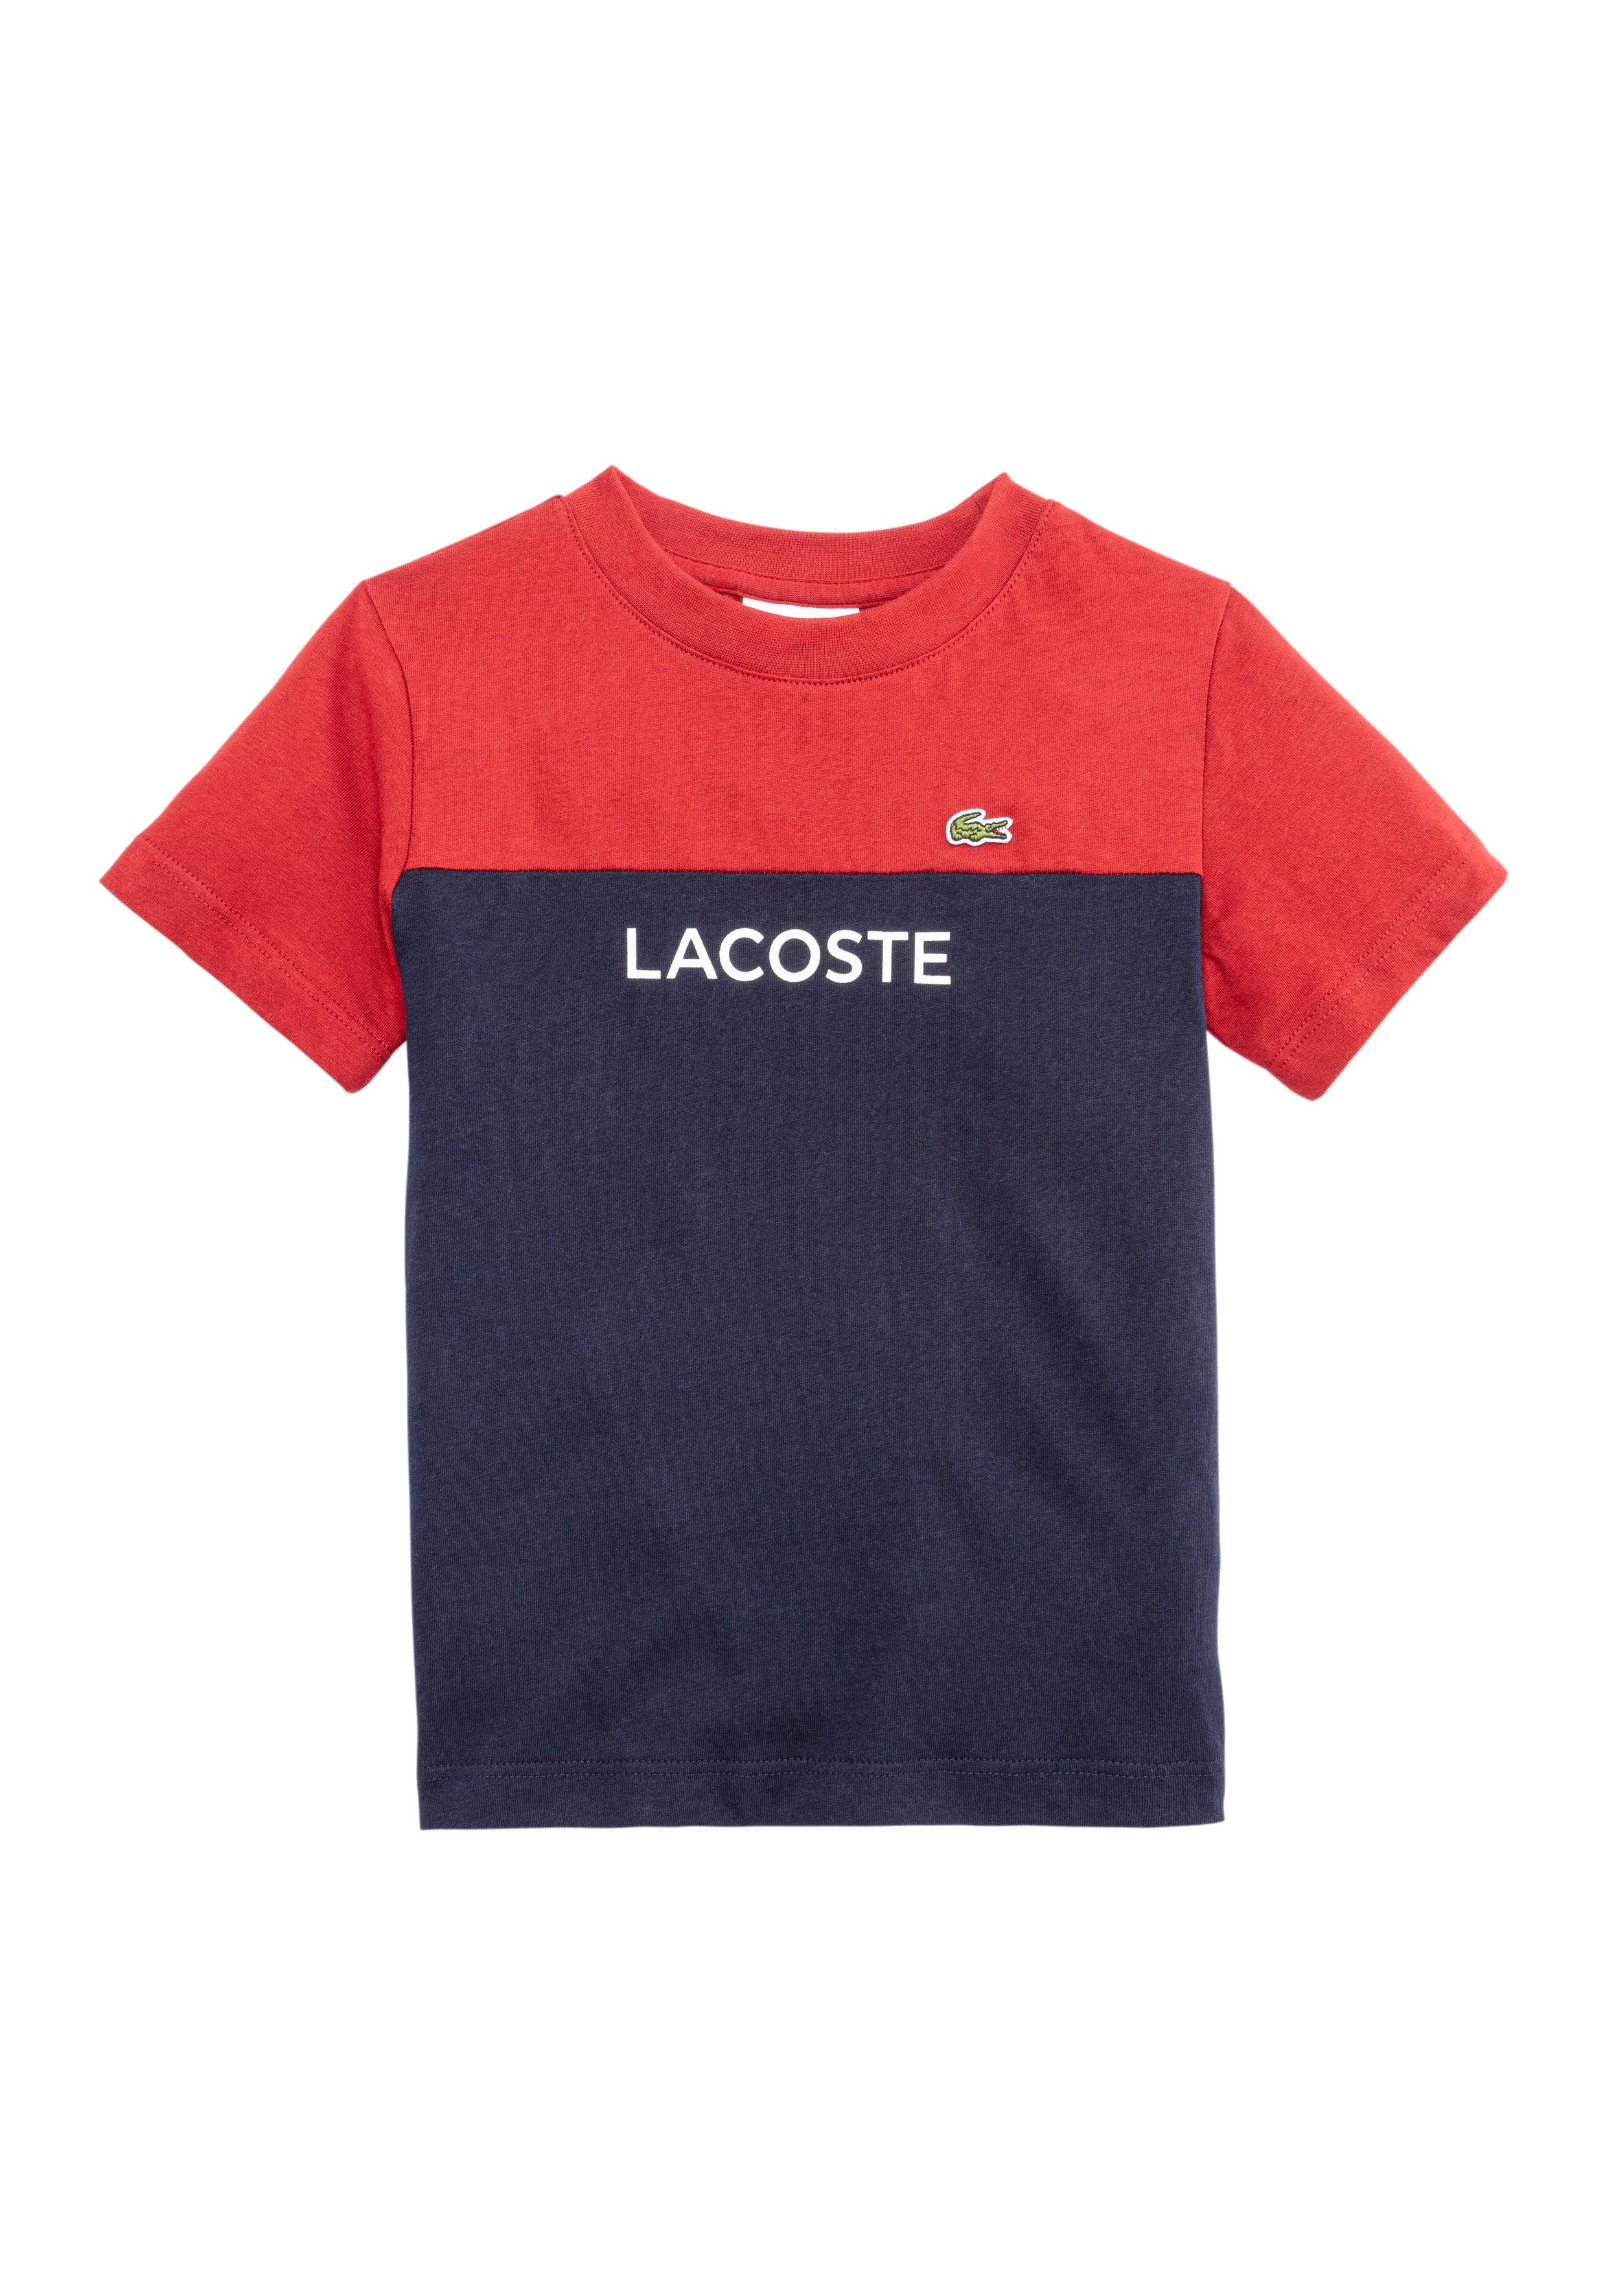 Lacoste Colour Block T-Shirt Junior Navy